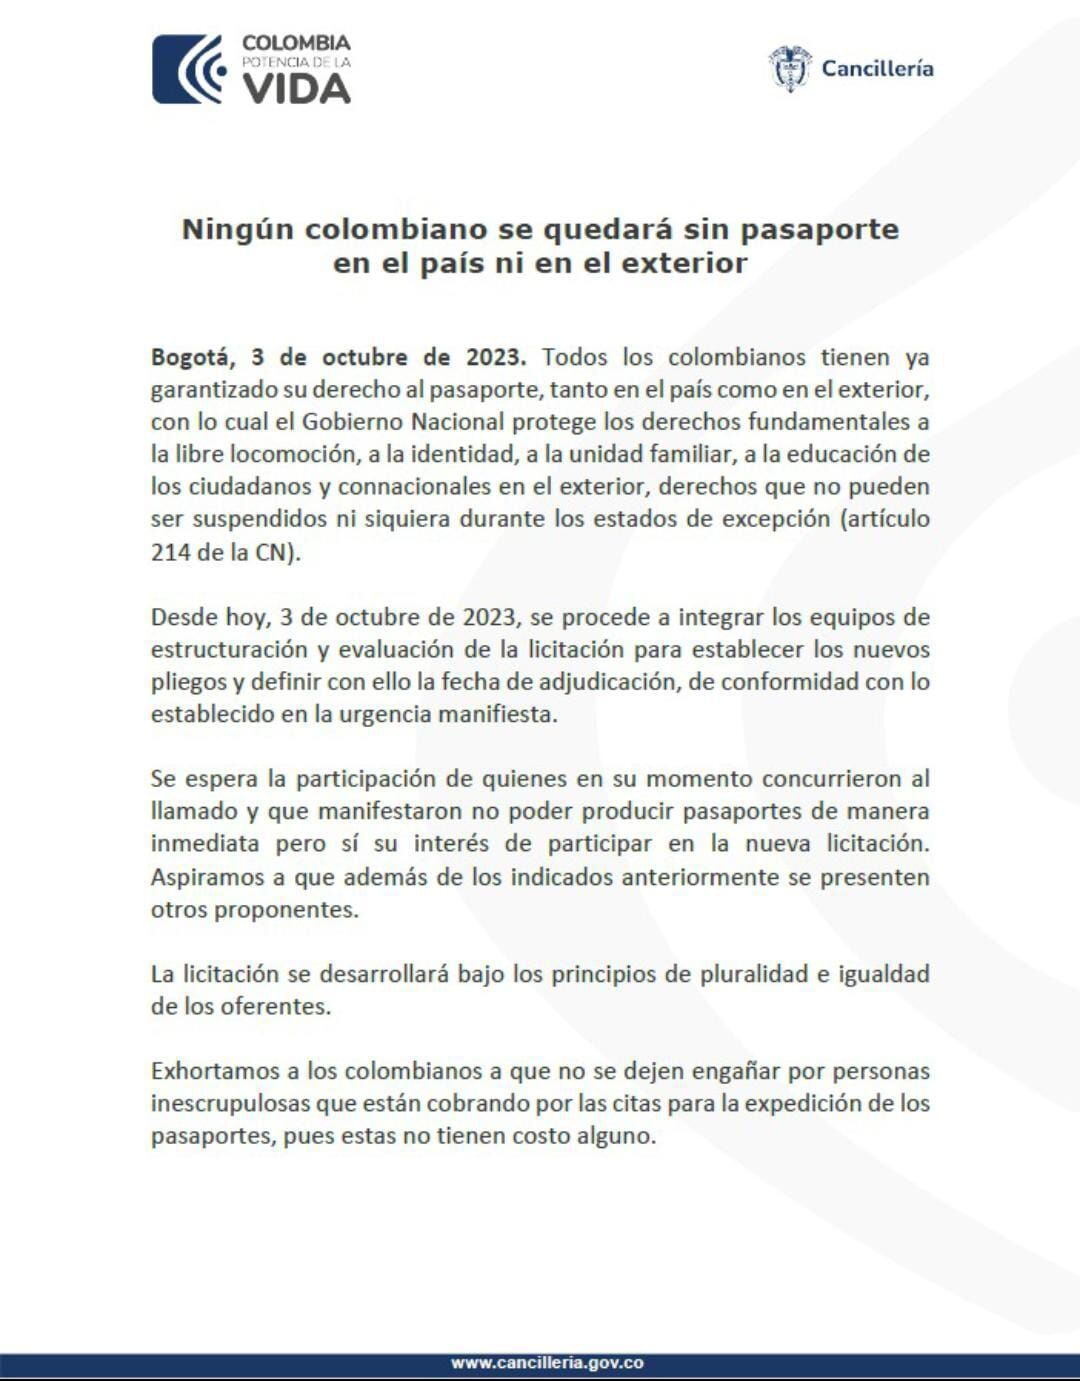 Este es el comunicado emitido por la Cancillería de Colombia.